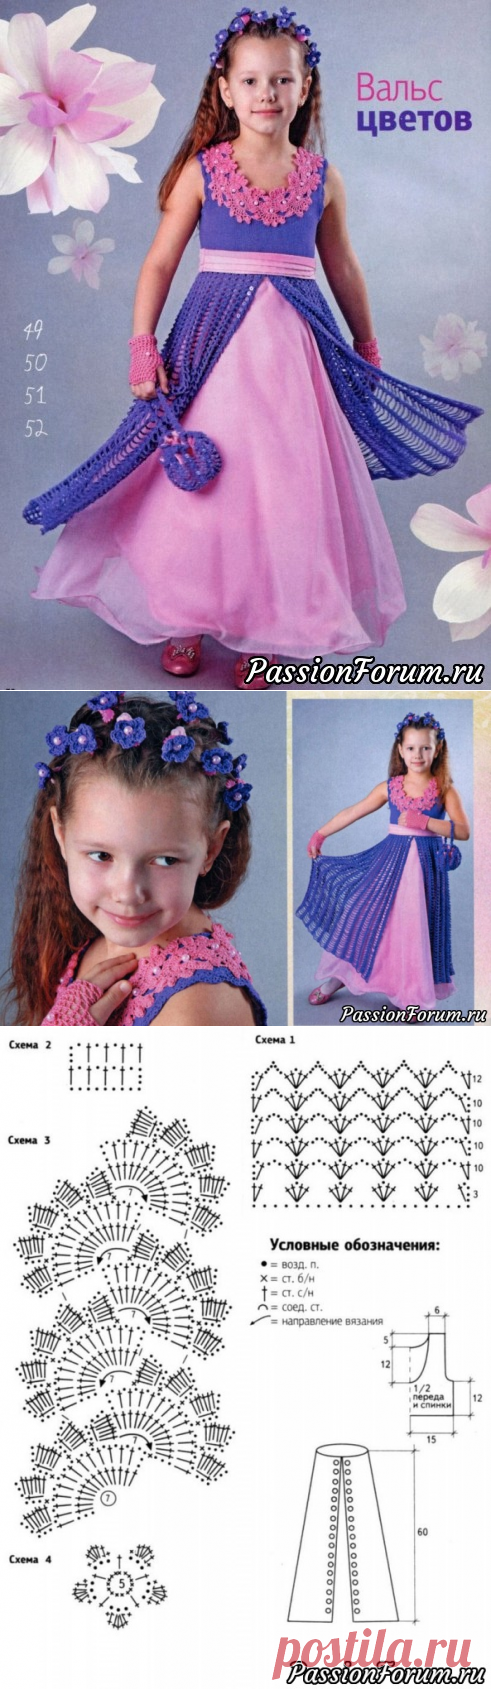 Бальное платье и аксессуары на 8-9 лет. Описание | Вязание спицами для детей